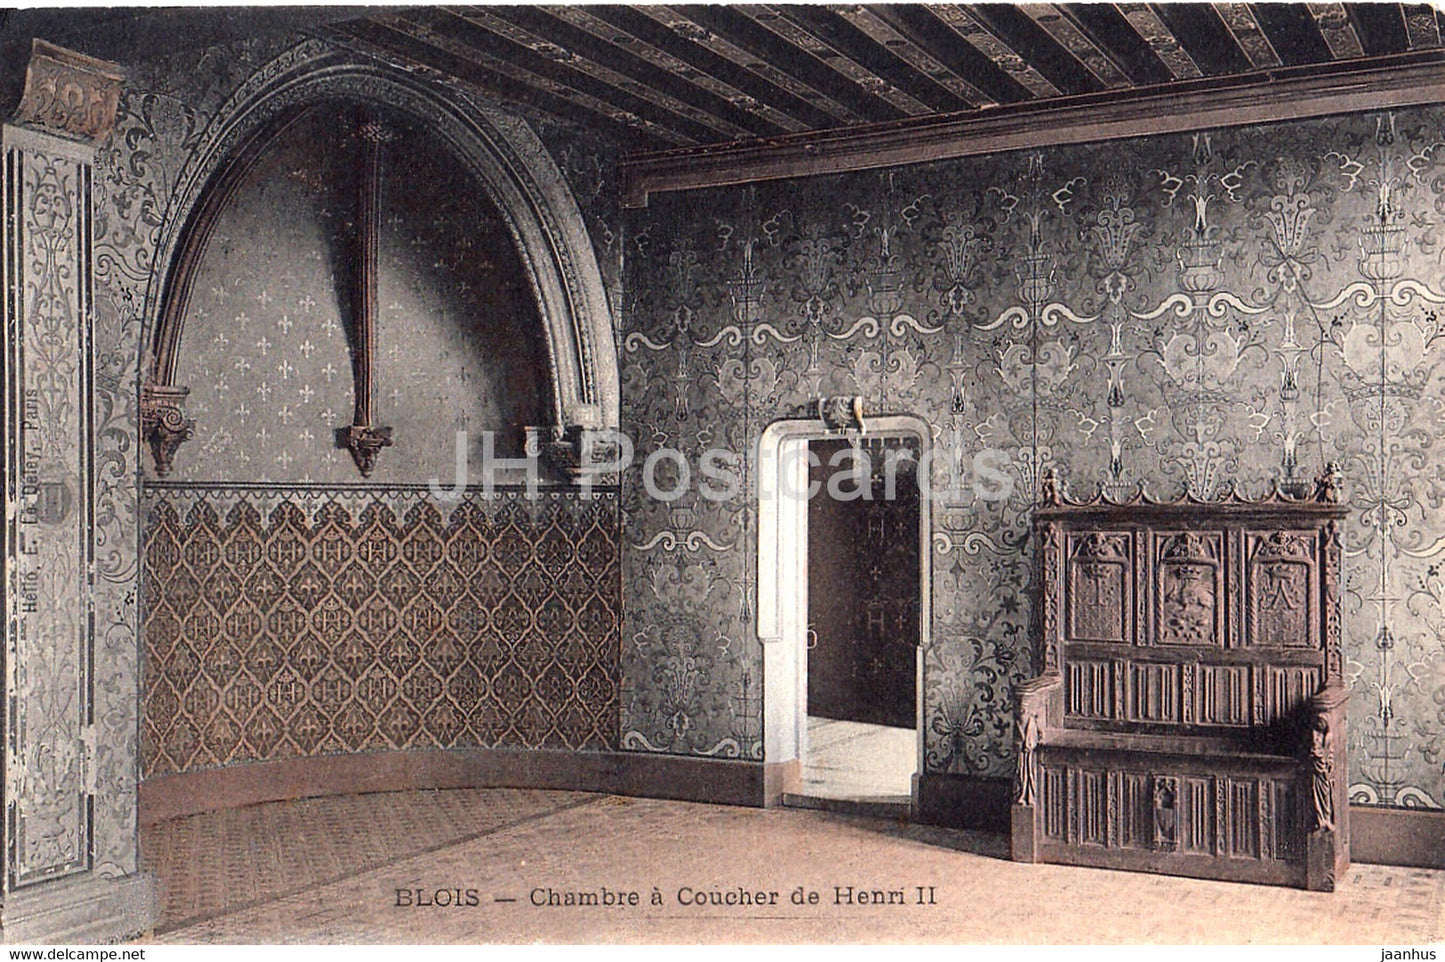 Blois - Chambre a Coucher de Henri II - castle - old postcard - France - unused - JH Postcards